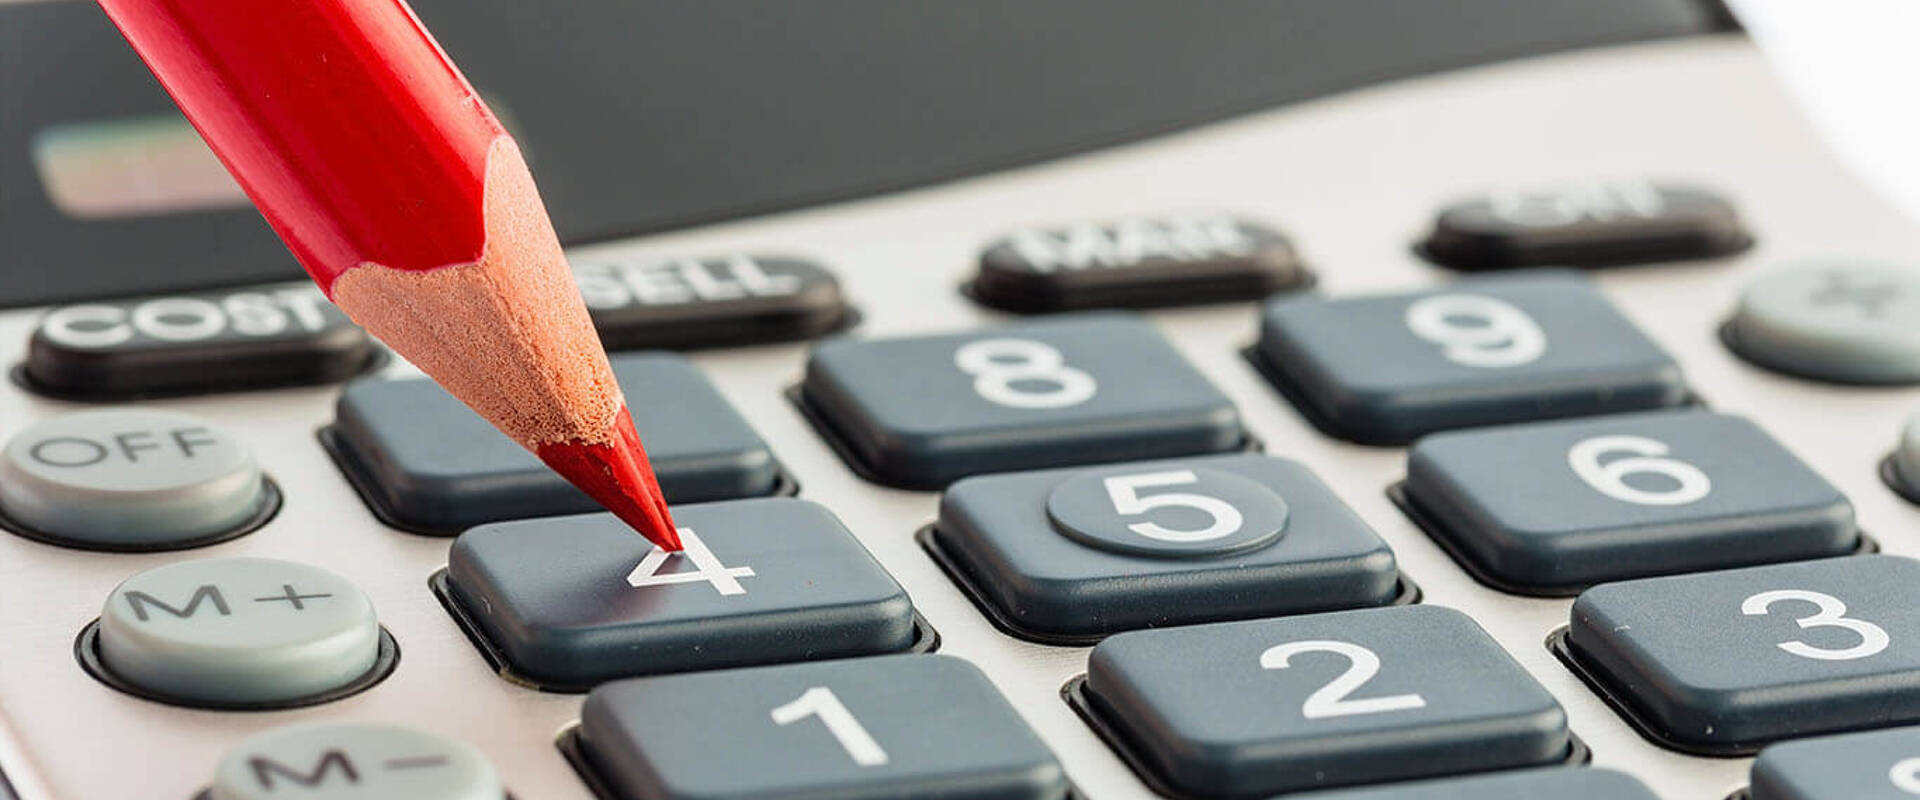 Bild eines Stifts und Taschenrechners als Symbol für kostenpflichtige Nebenleistungen in der Buchhaltung